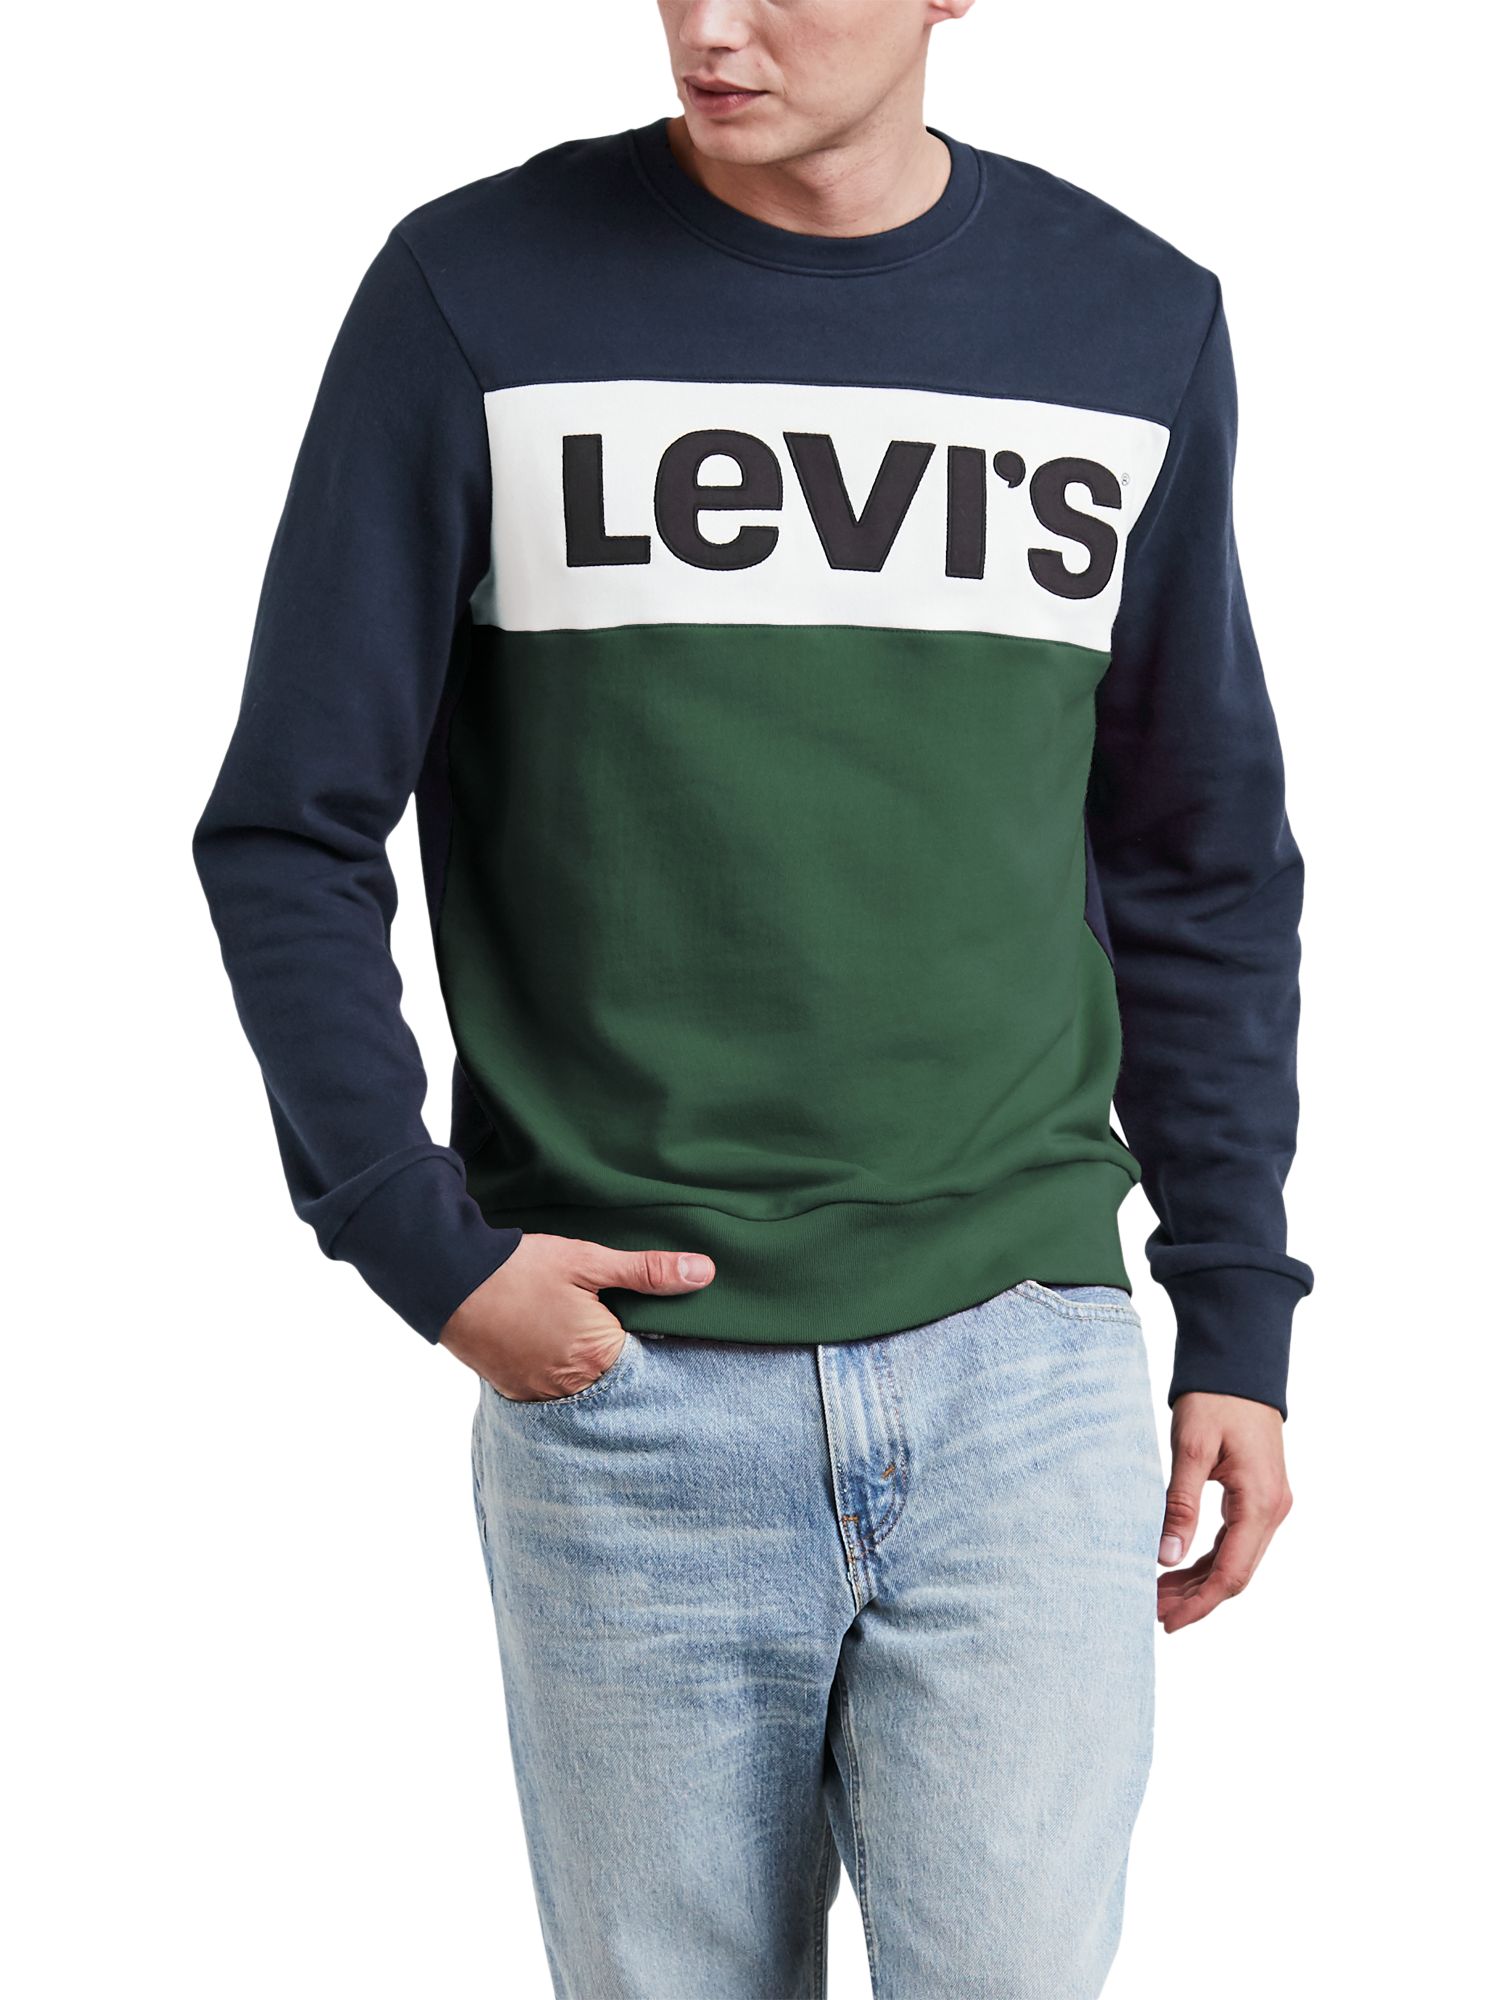 levis colour block hoodie